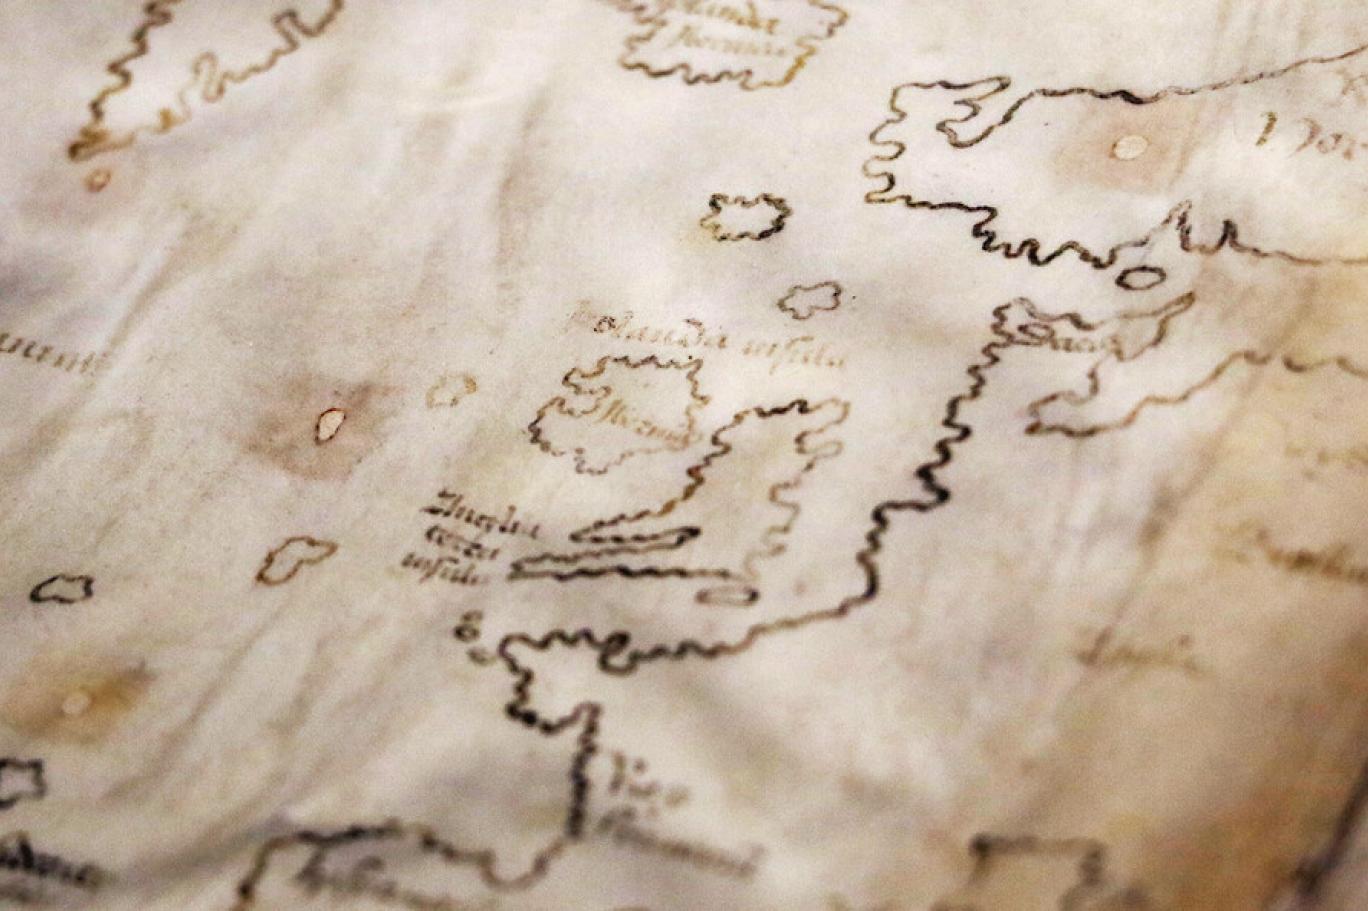 Ünlü Vinland haritasının gizemi çözüldü